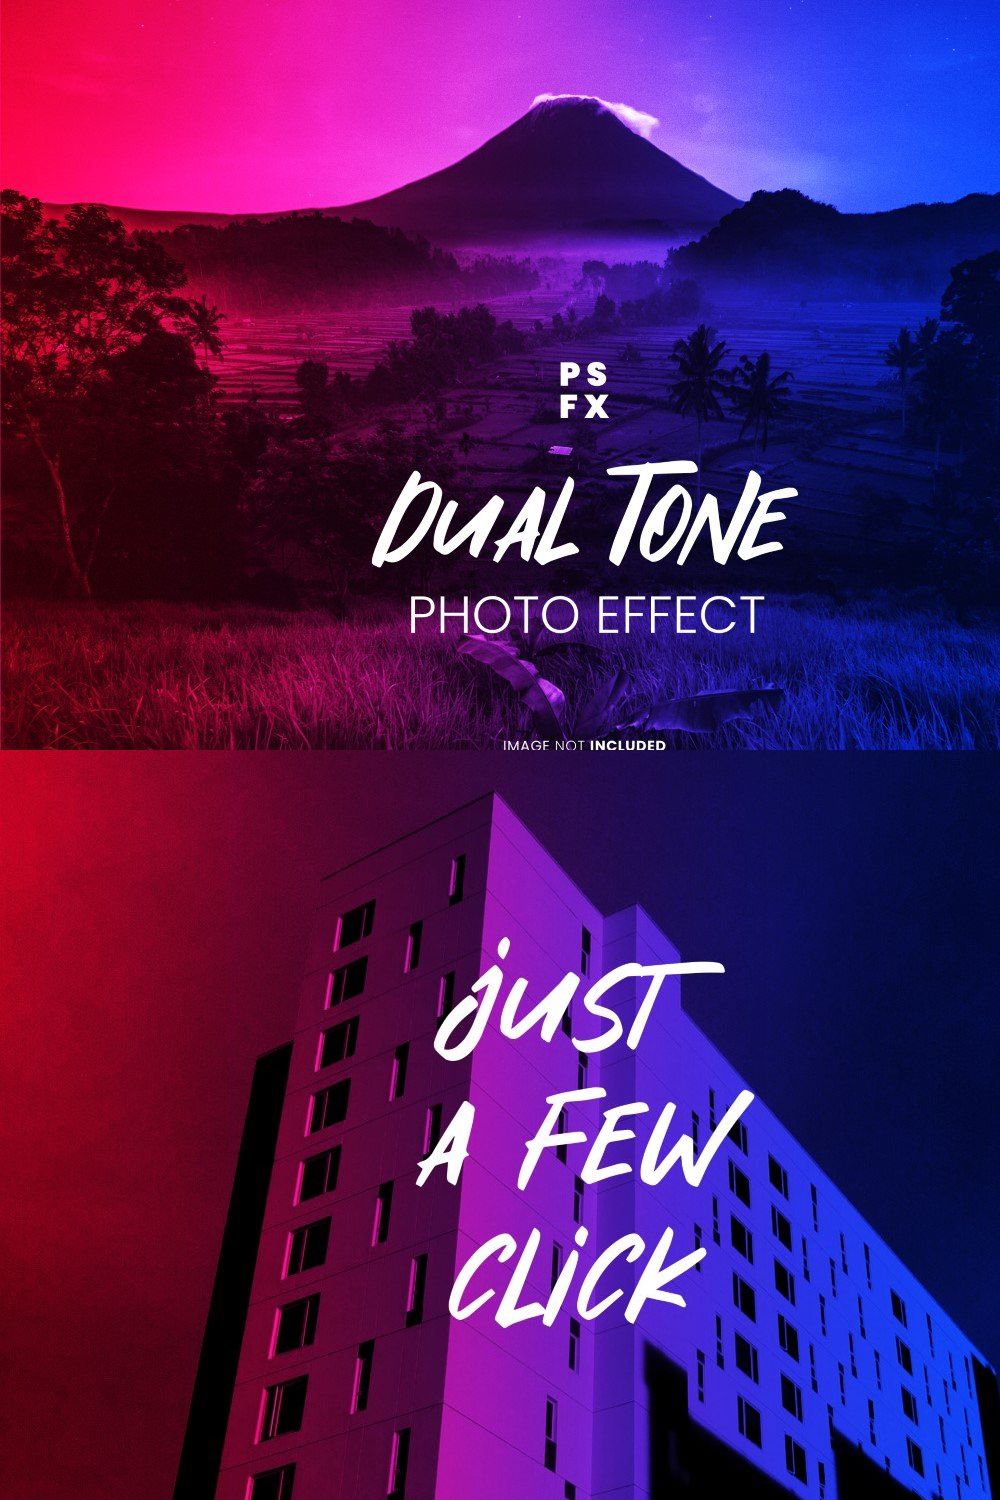 Dualtone Photo Effect Psd pinterest preview image.